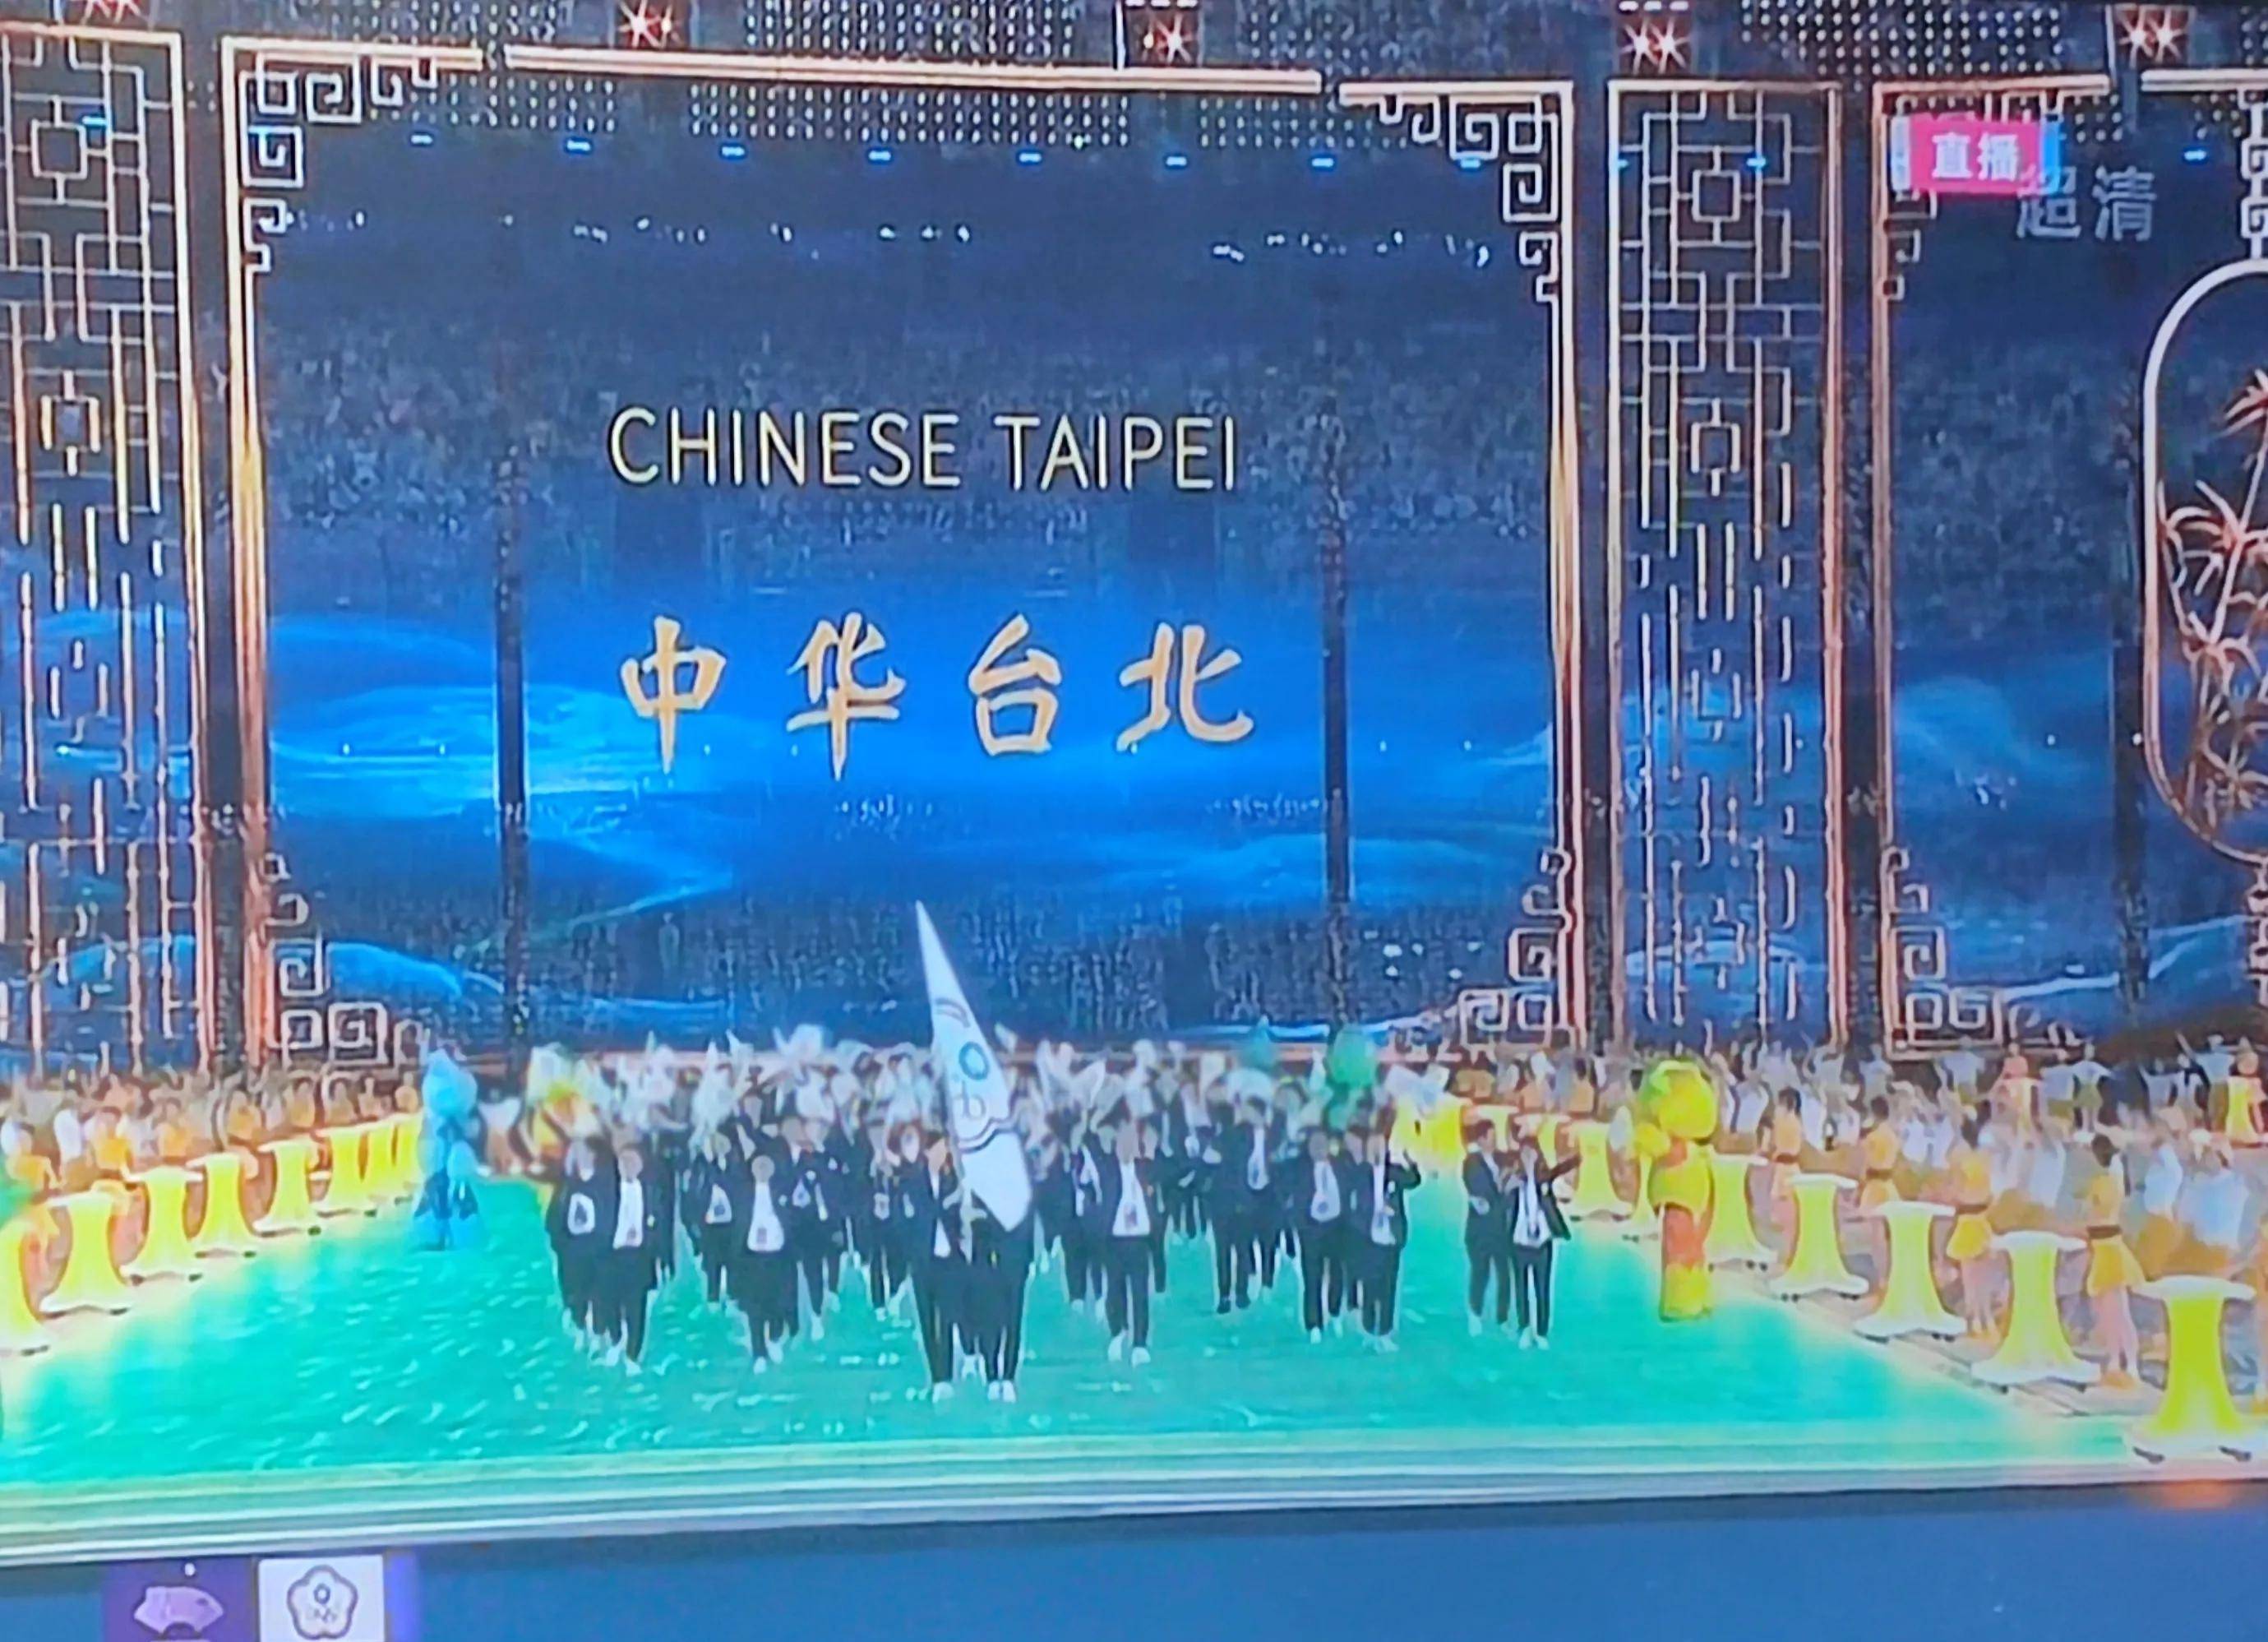 臺運動員入場時現場屏幕寫的中華臺北，解說員卻堅持說我們臺北